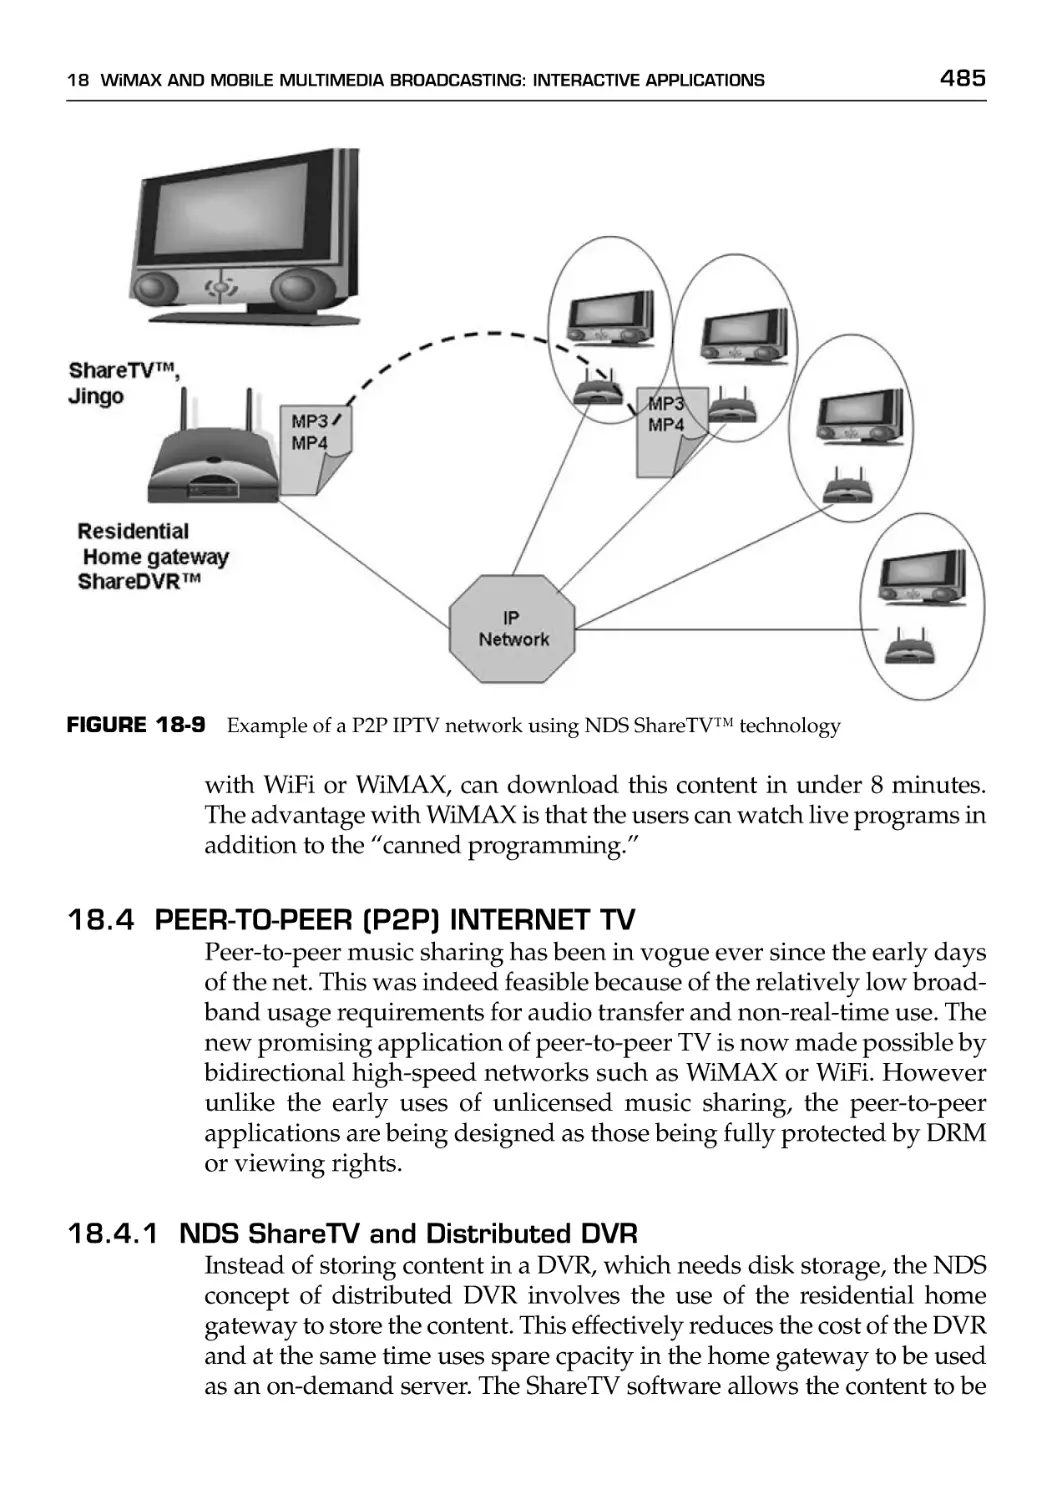 18.4 Peer-to-Peer (P2P) Internet TV